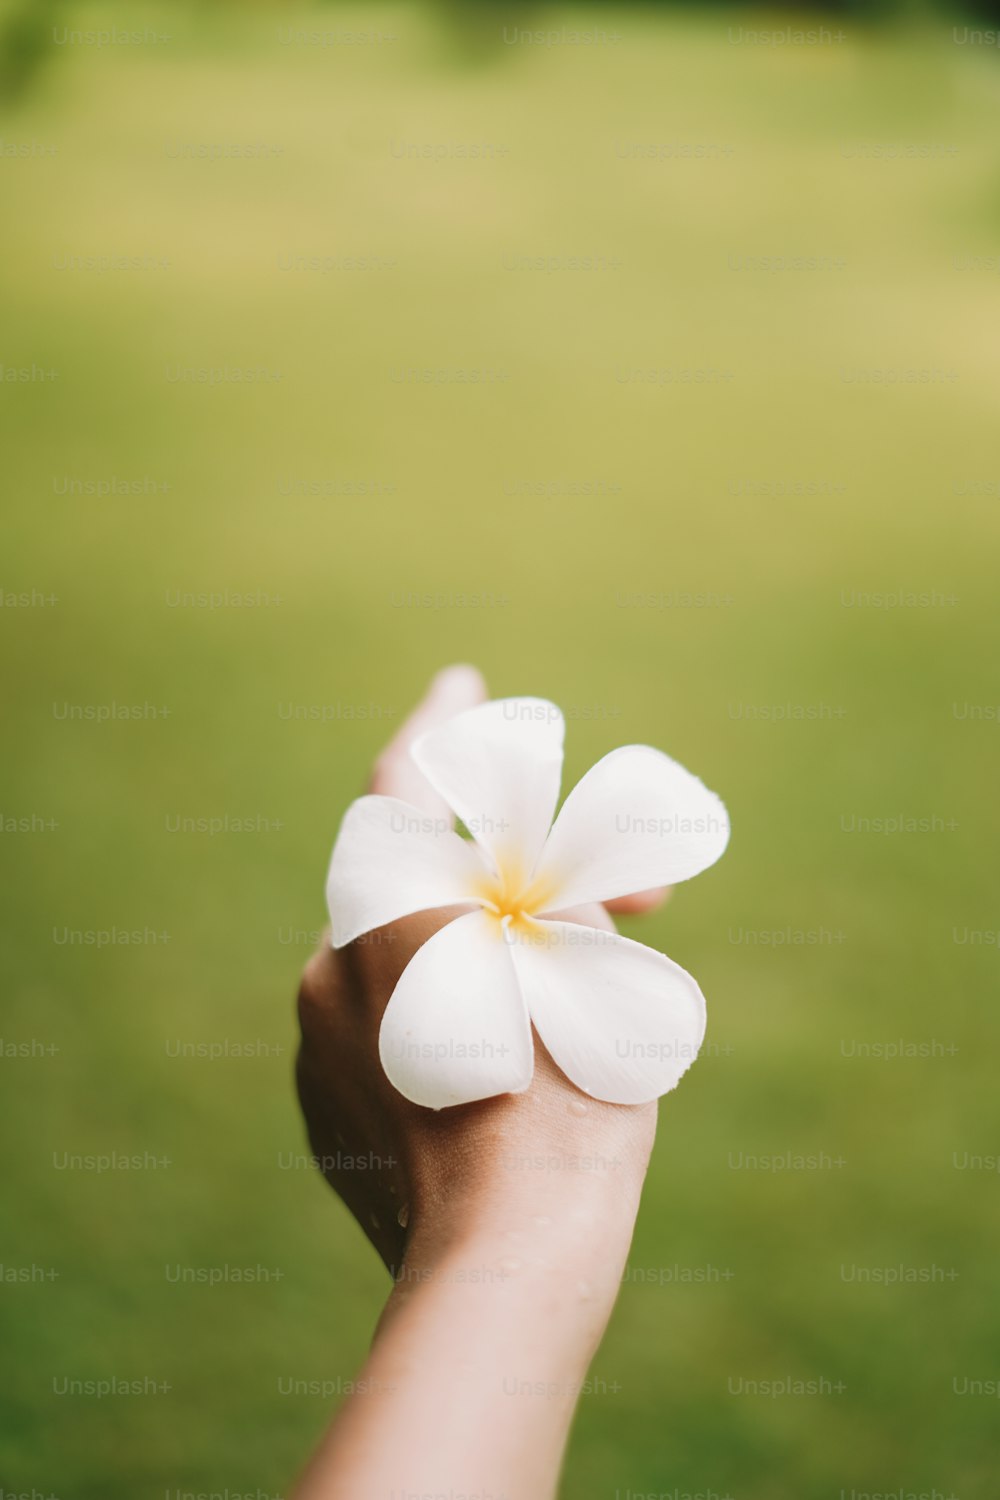 une personne tenant une fleur blanche dans sa main